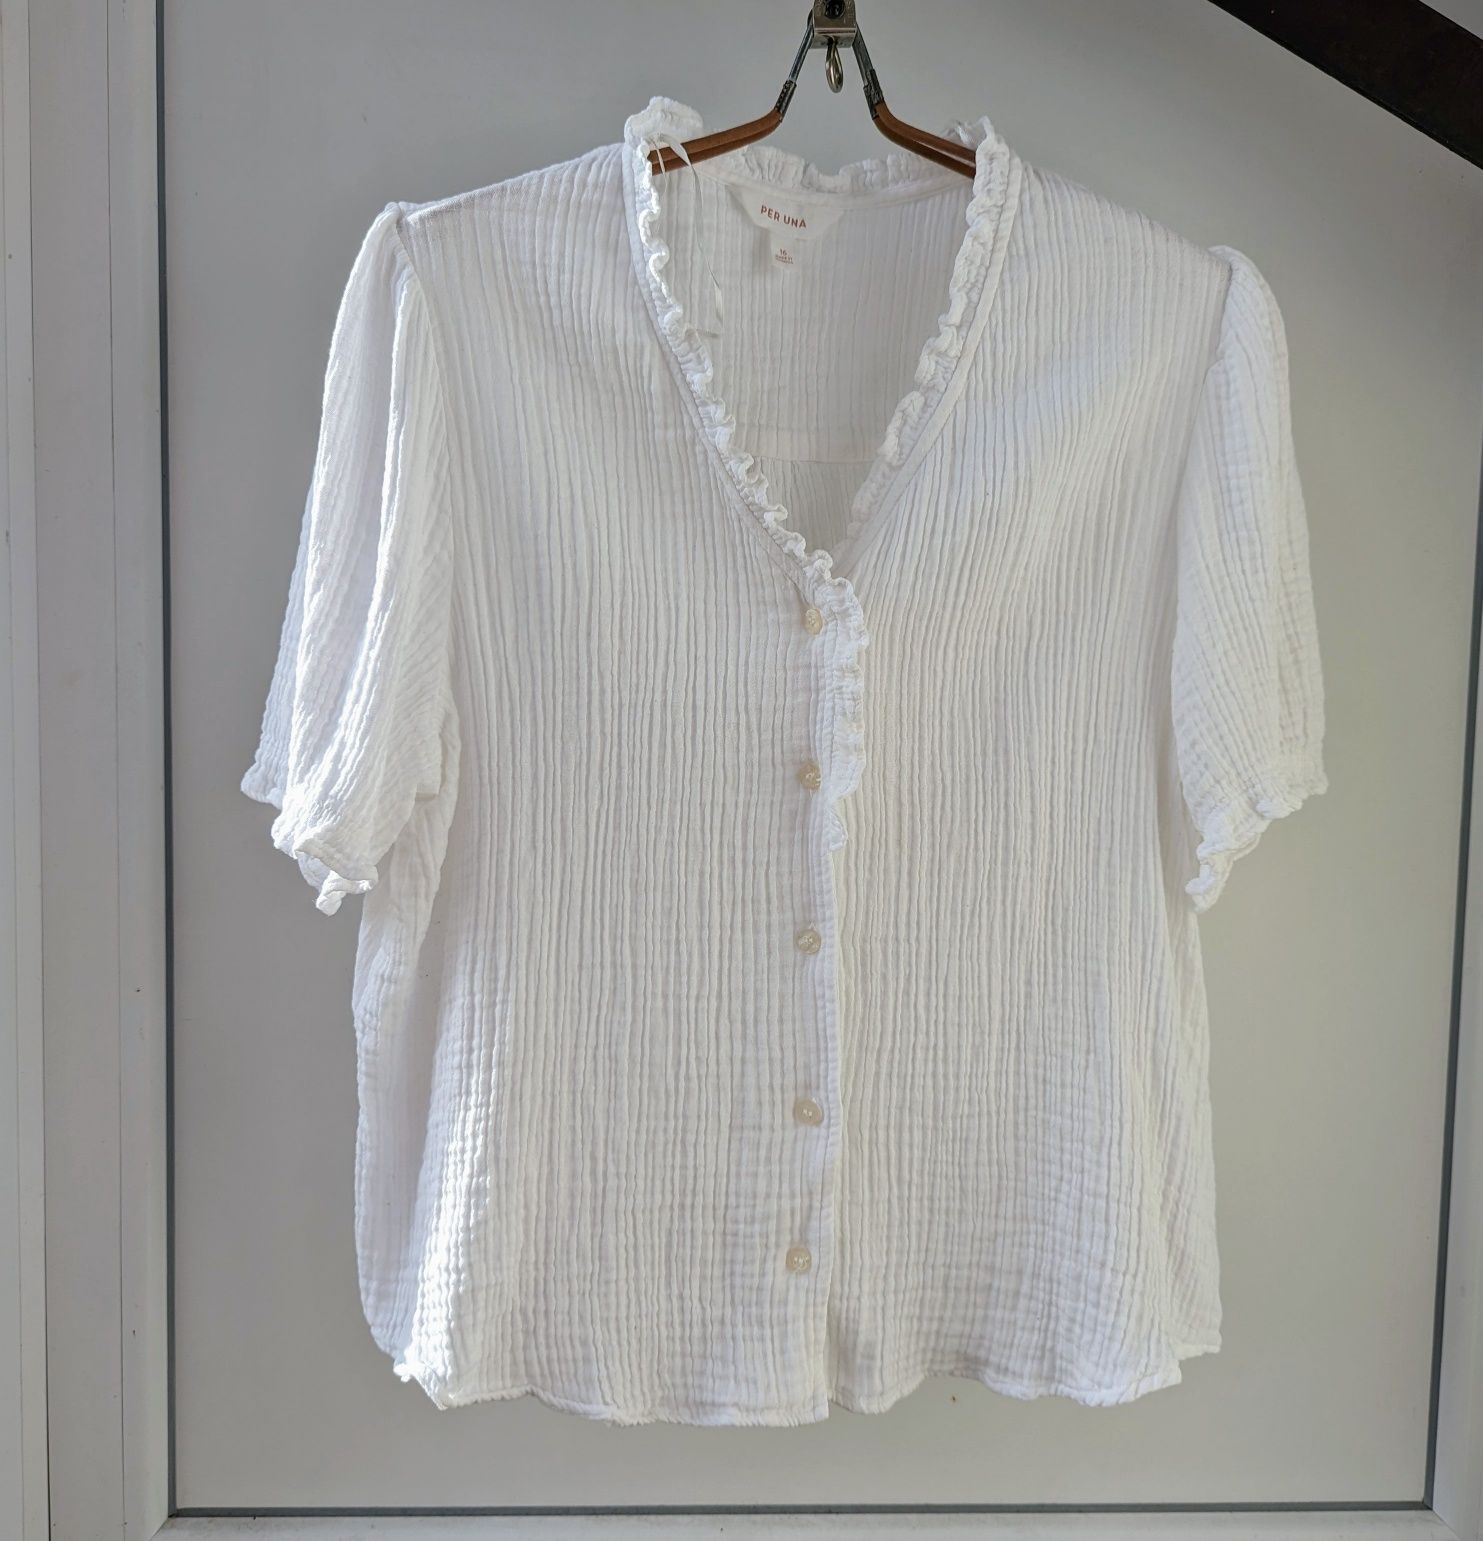 Блуза з мусліну в білому кольорі